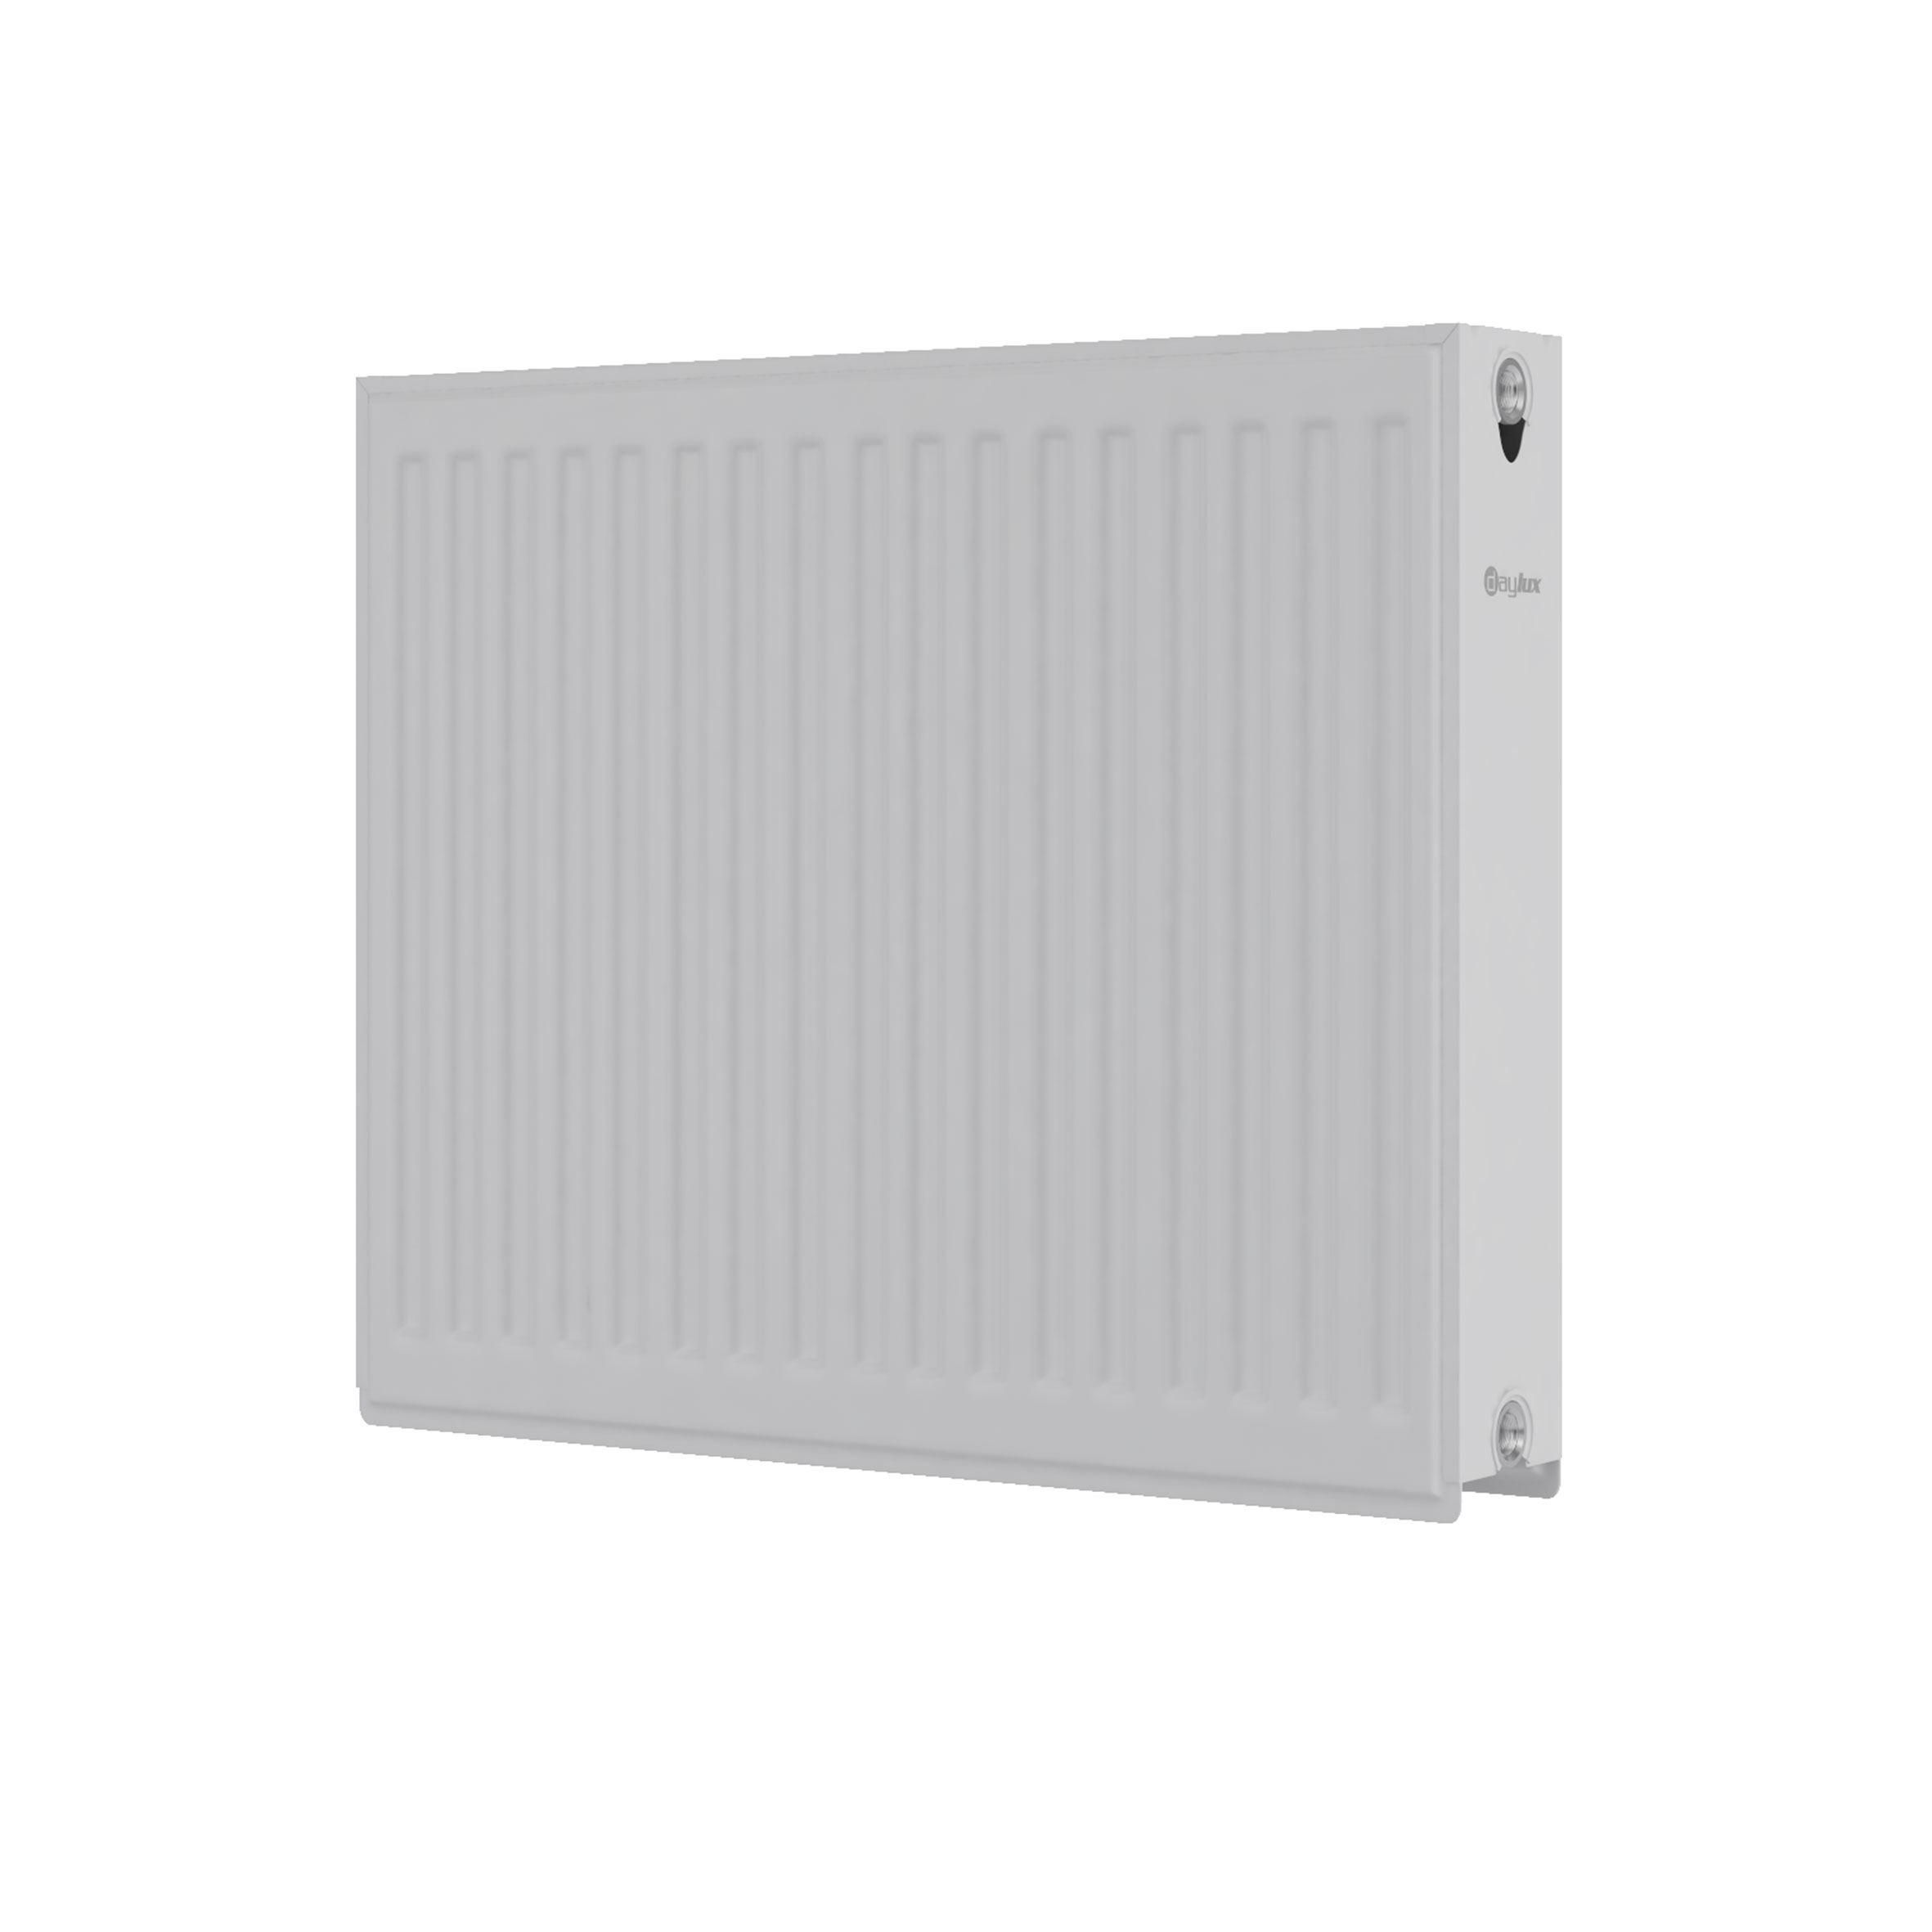 Радиатор для отопления Daylux 22 300x500 (боковое подключение) цена 1114.00 грн - фотография 2